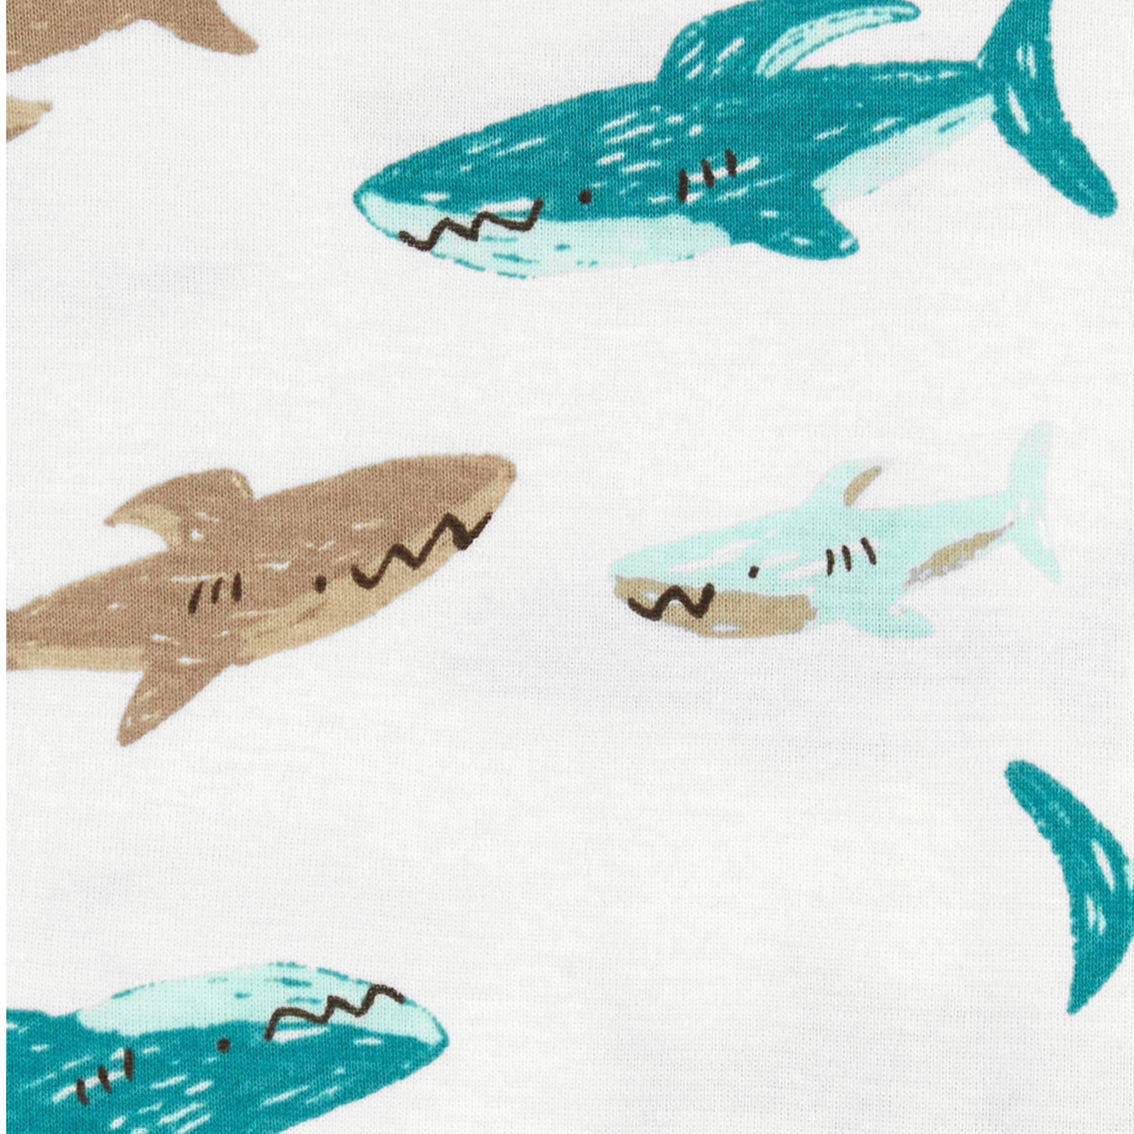 Carter's Toddler Boys Shark 100% Cotton Snug Fit 4 pc. Pajama Set - Image 3 of 3